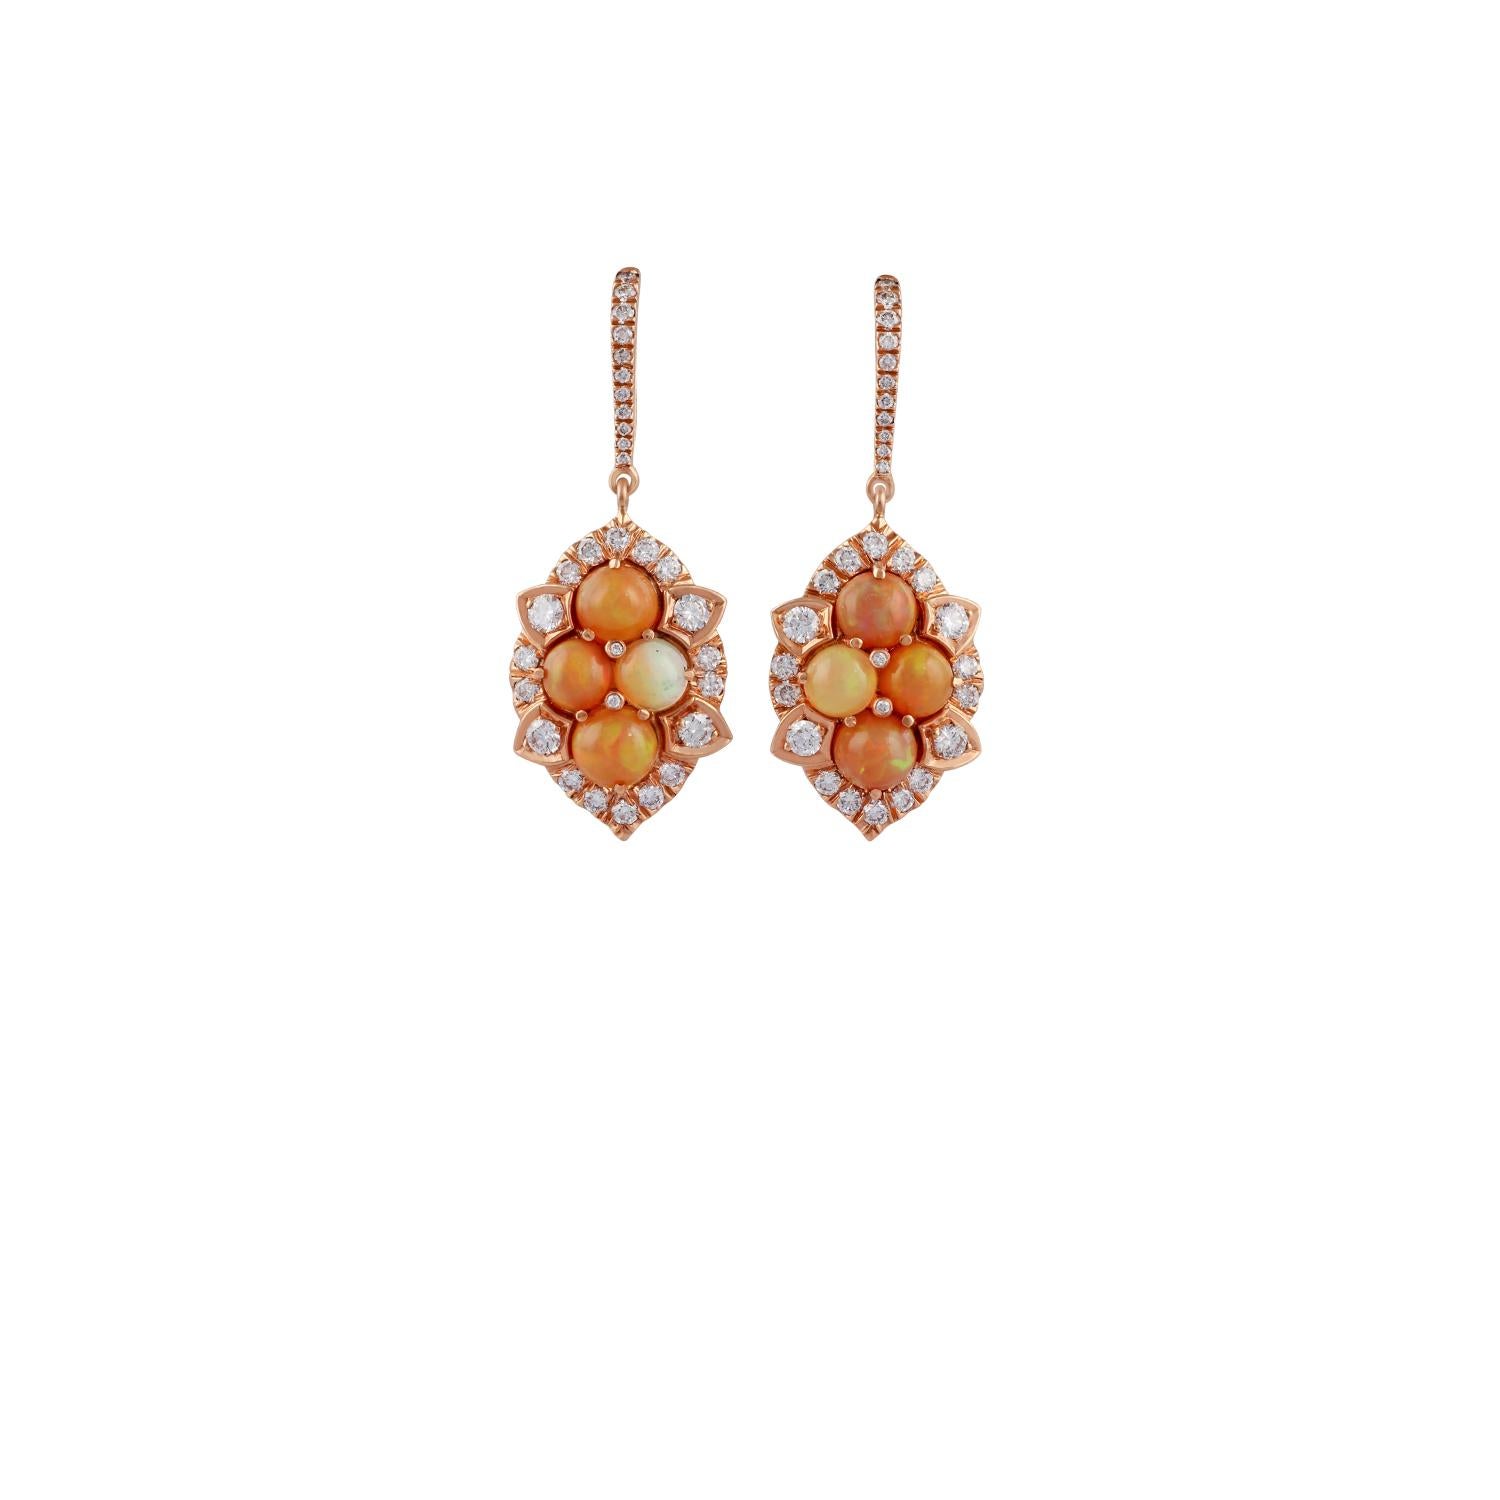 Dies sind eine exklusive Opal & Diamant-Ohrringe in 18 Karat Roségold besetzt verfügt über 8 Stück Cabochon geformt Opal Gewicht 3,13 Karat mit 62 Stück rund geformten Diamanten Gewicht 1,53 Karat, diese gesamte Ohrring Paar ist von 18 Karat